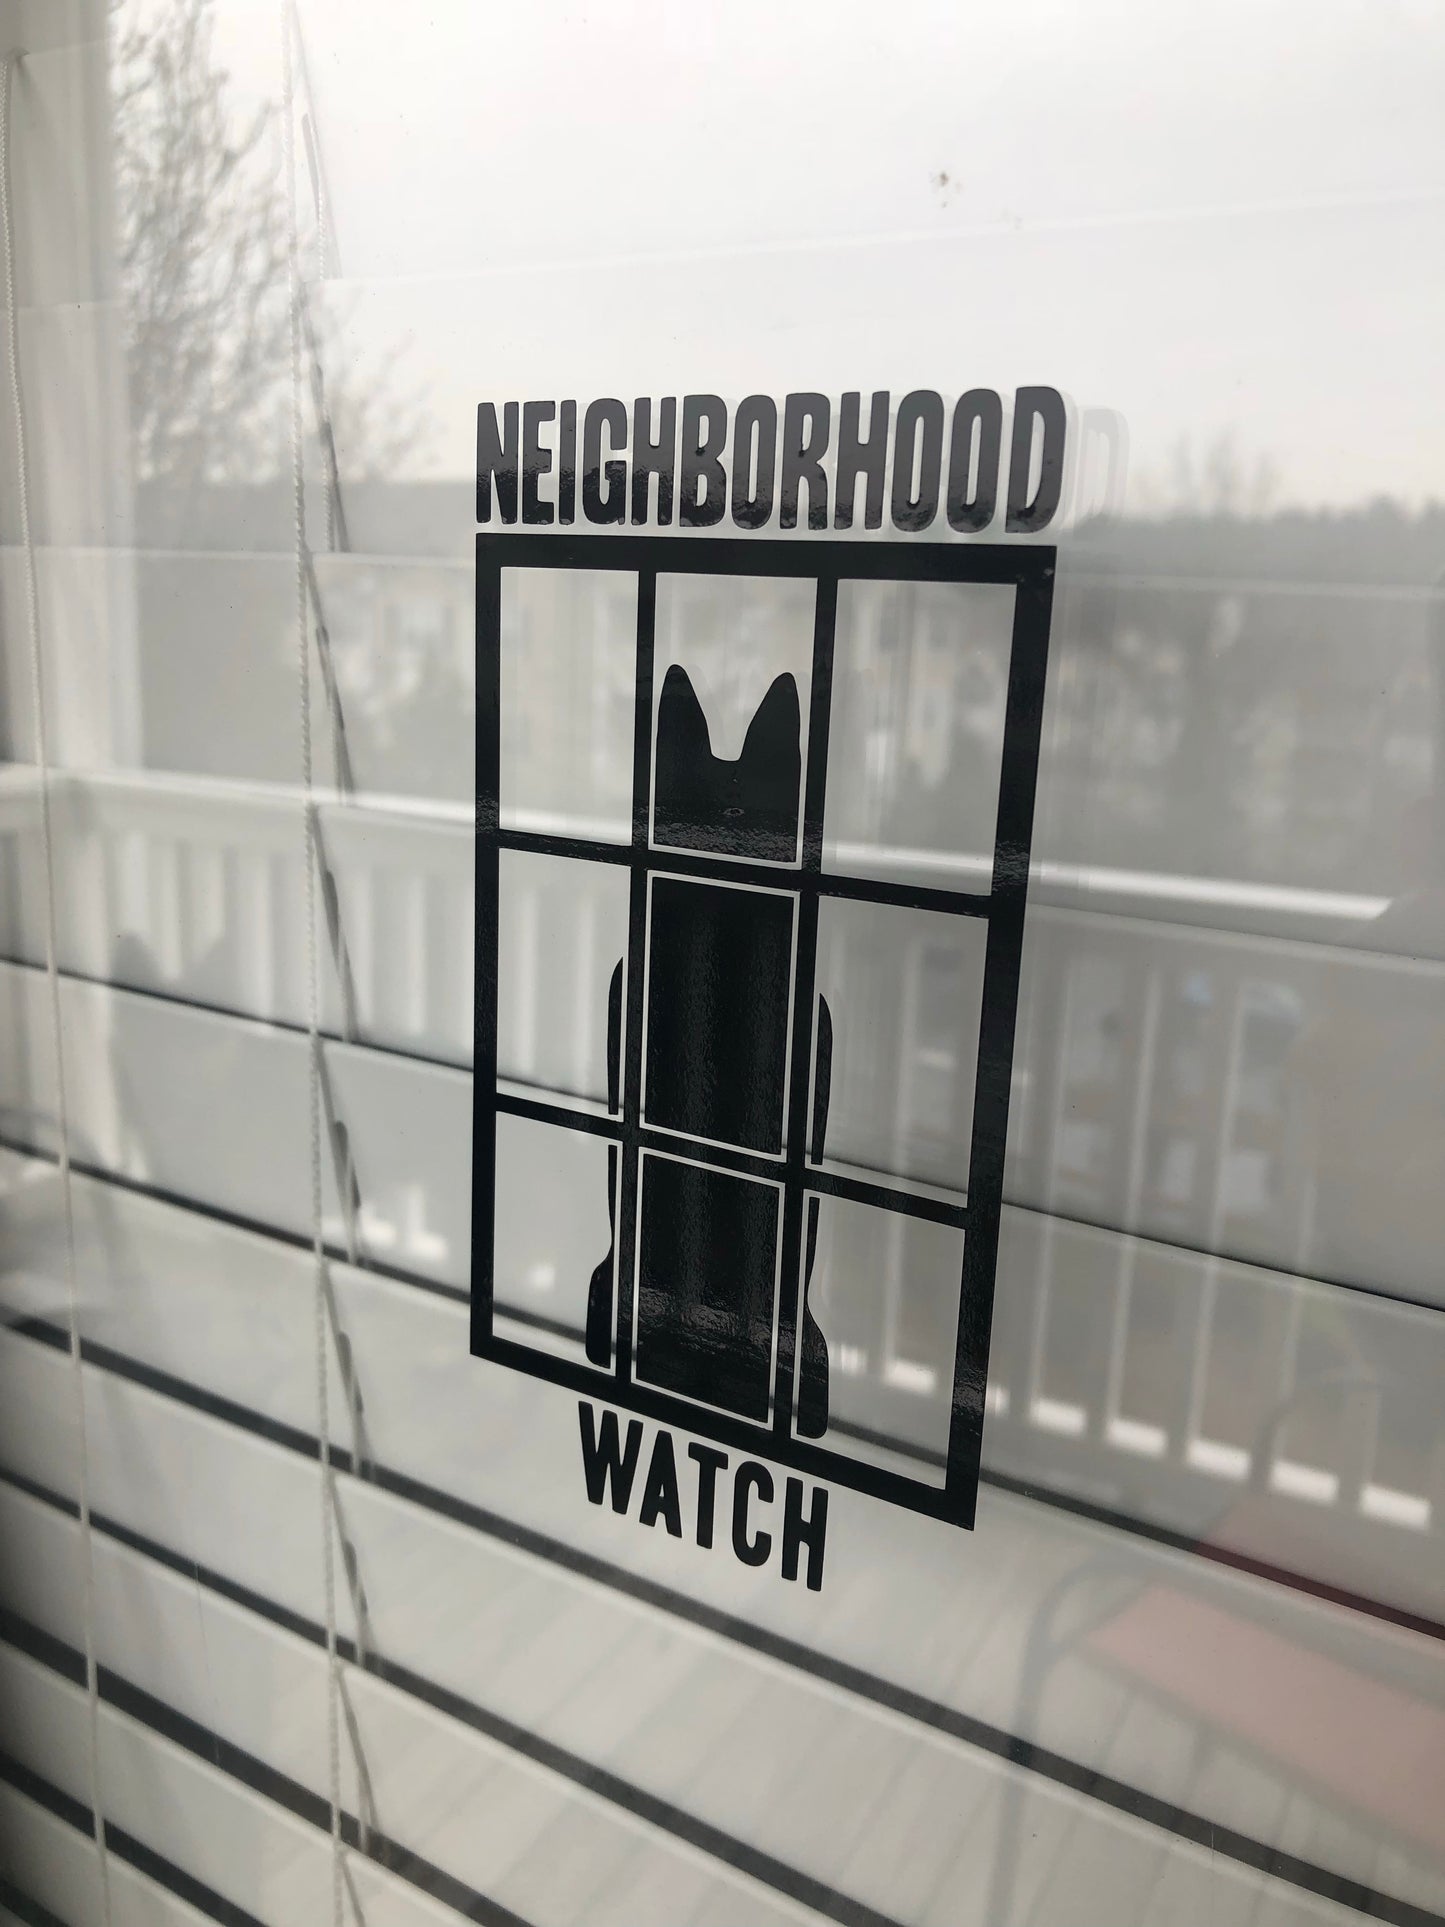 “Neighborhood Watch” Decal